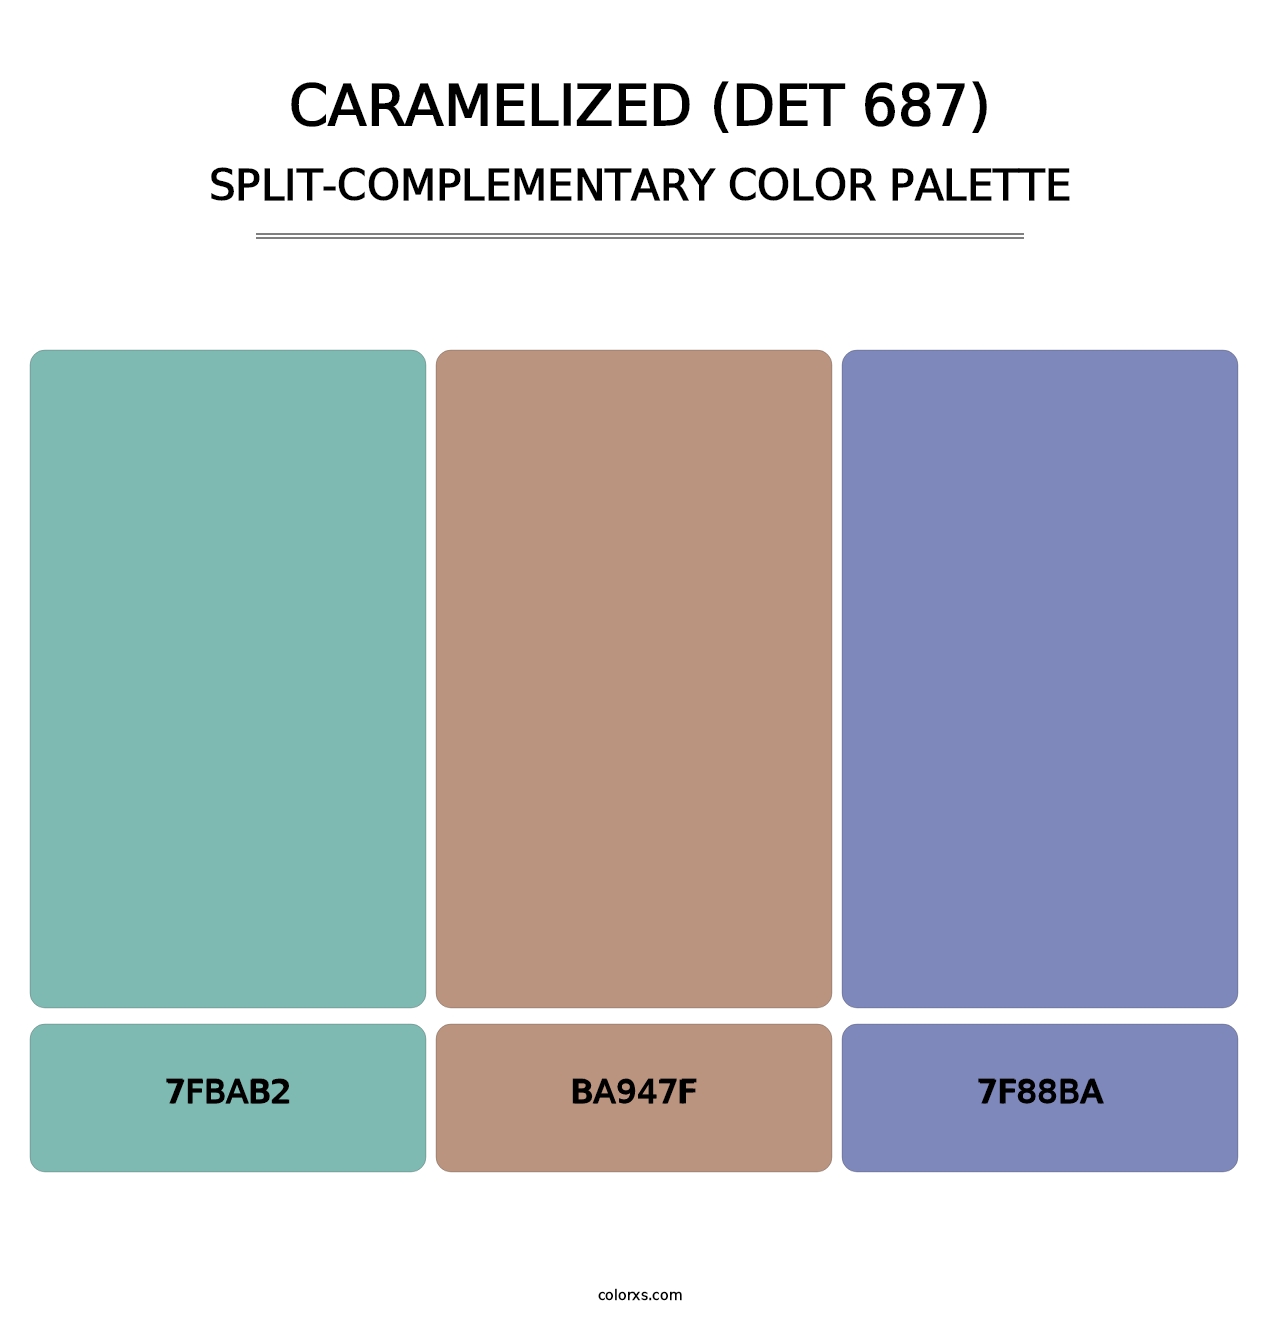 Caramelized (DET 687) - Split-Complementary Color Palette